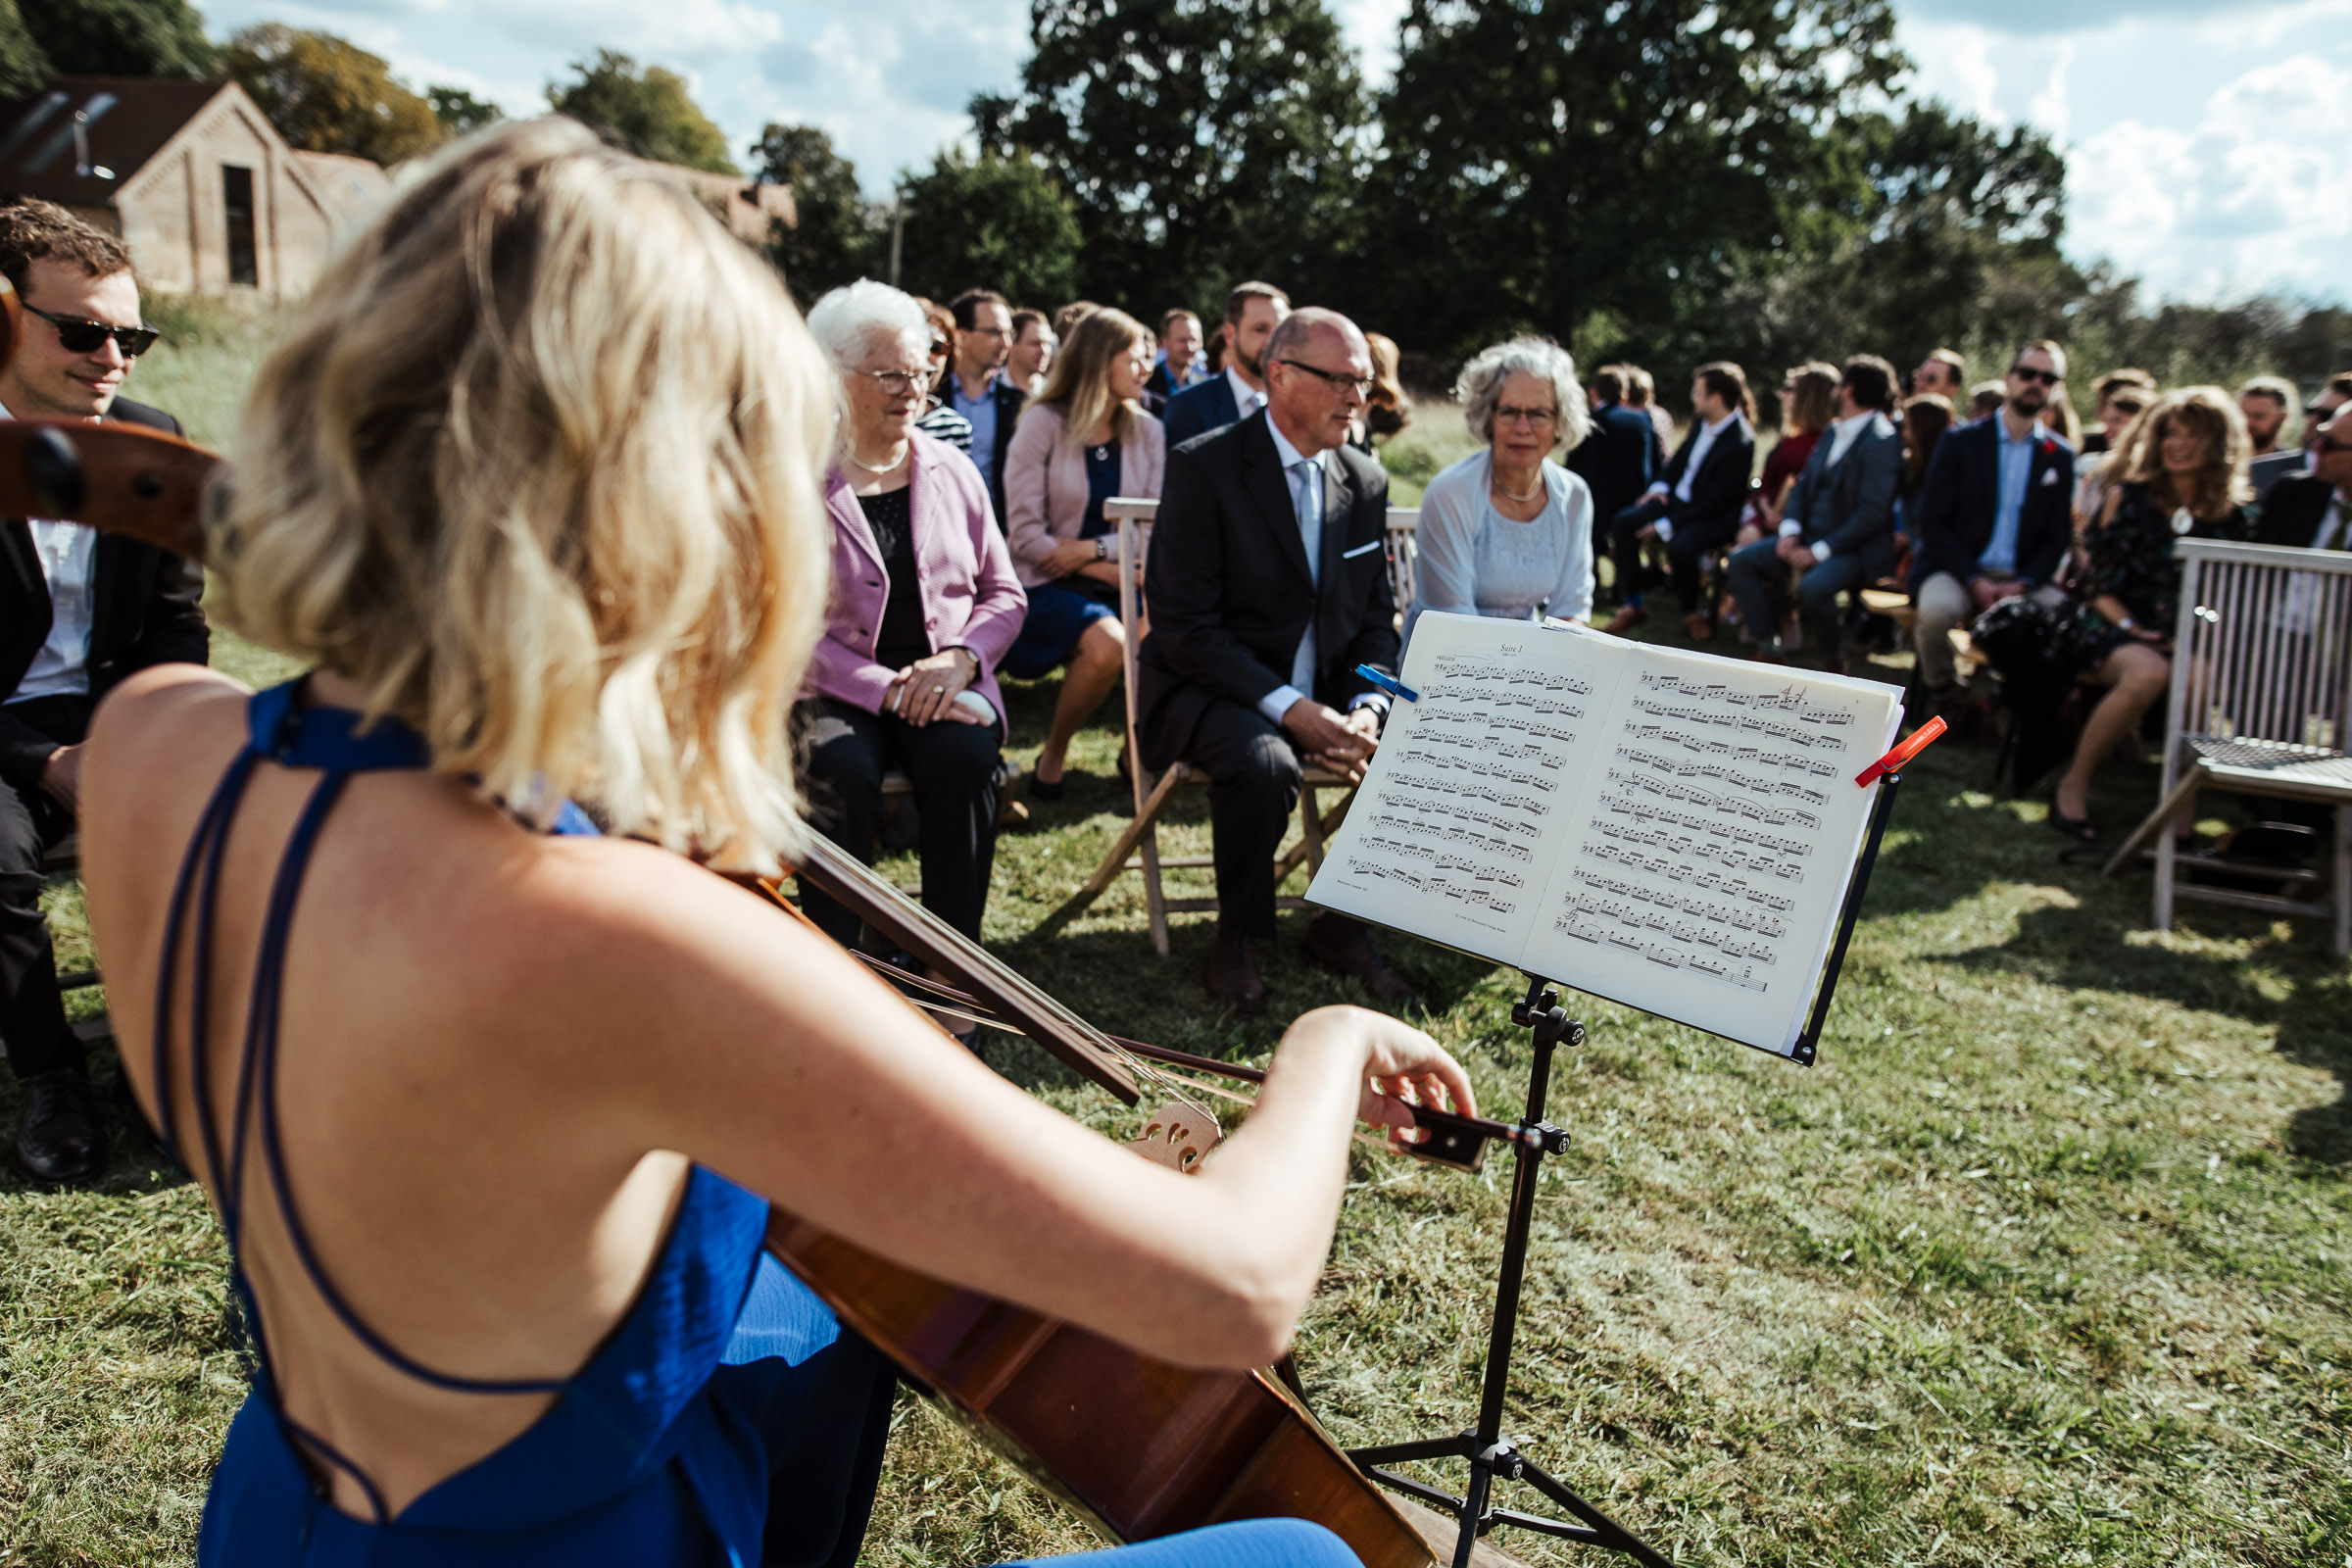 Landhochzeit: Trauzeugin spielt Cello während der freien Trauung